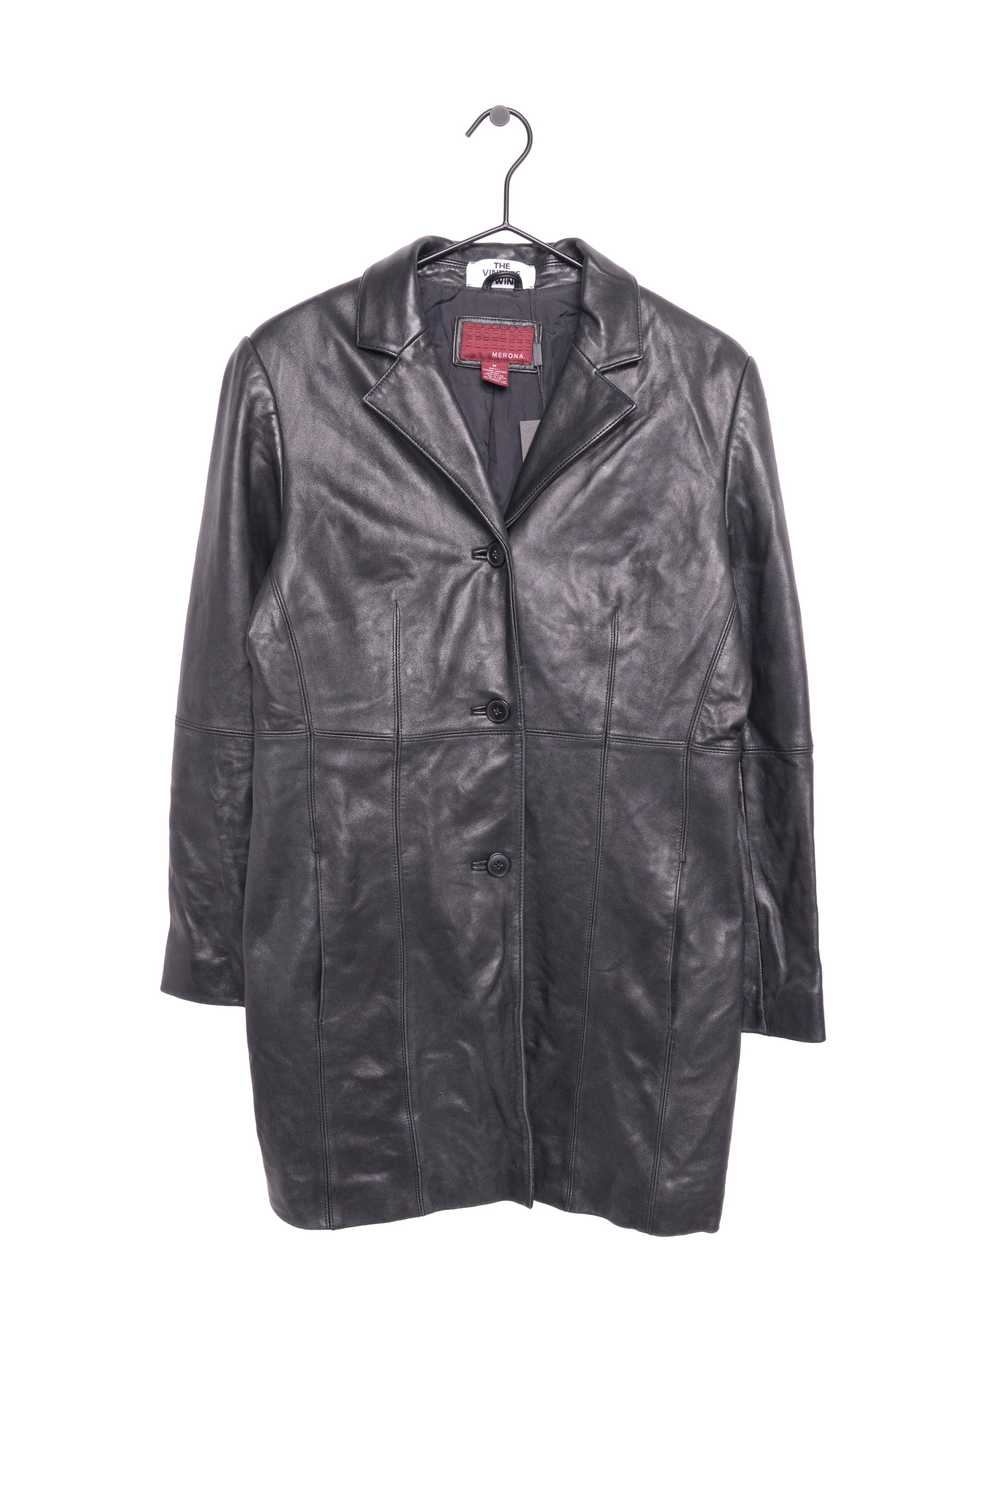 1990s Soft Long Leather Jacket - image 1